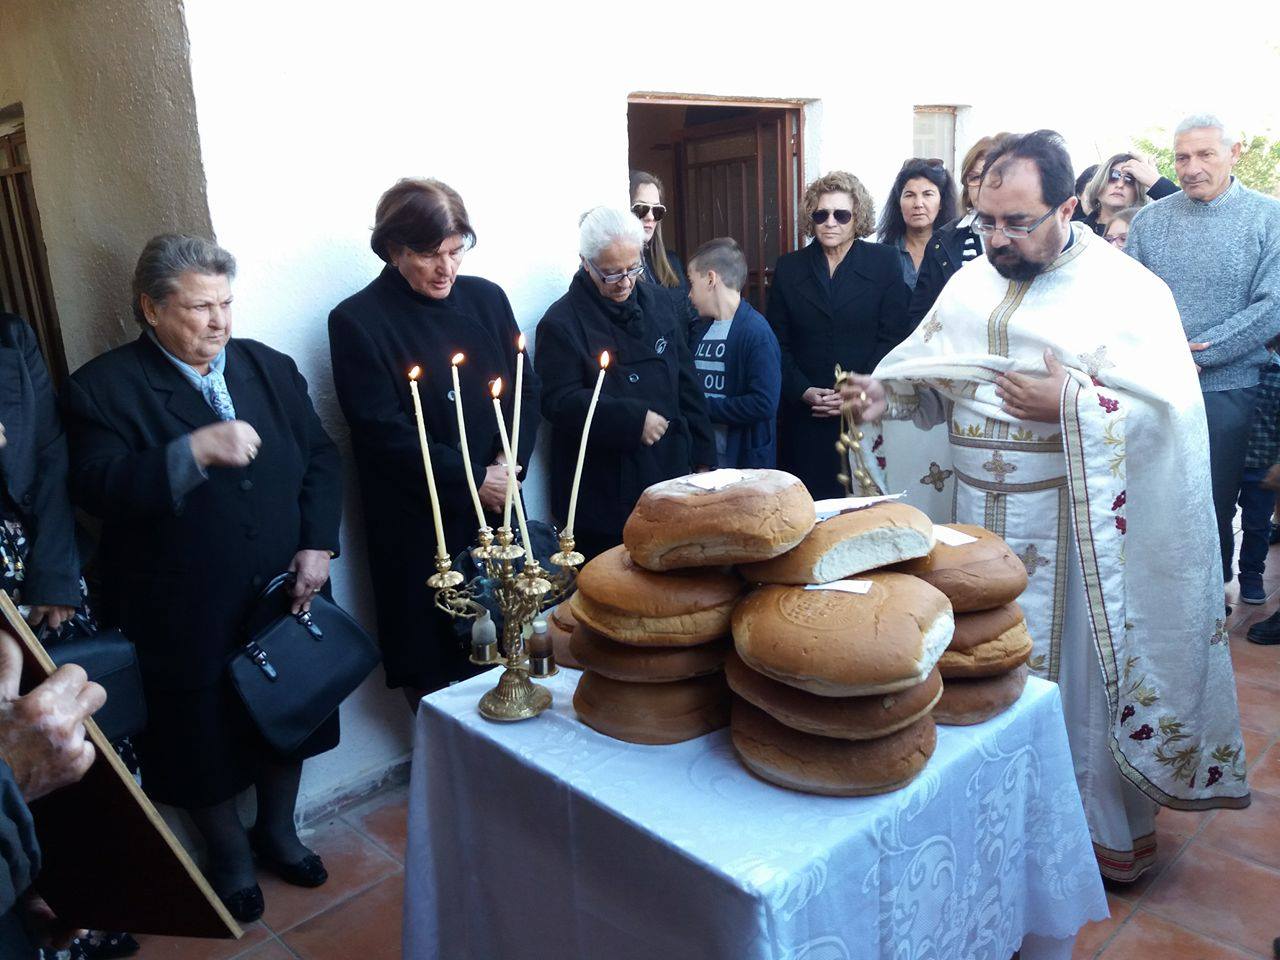 Πολύς κόσμος άναψε ένα κεράκι στον Άγιο Στυλιανό στο Μετόχι του Τυμπακίου (Εικόνες)